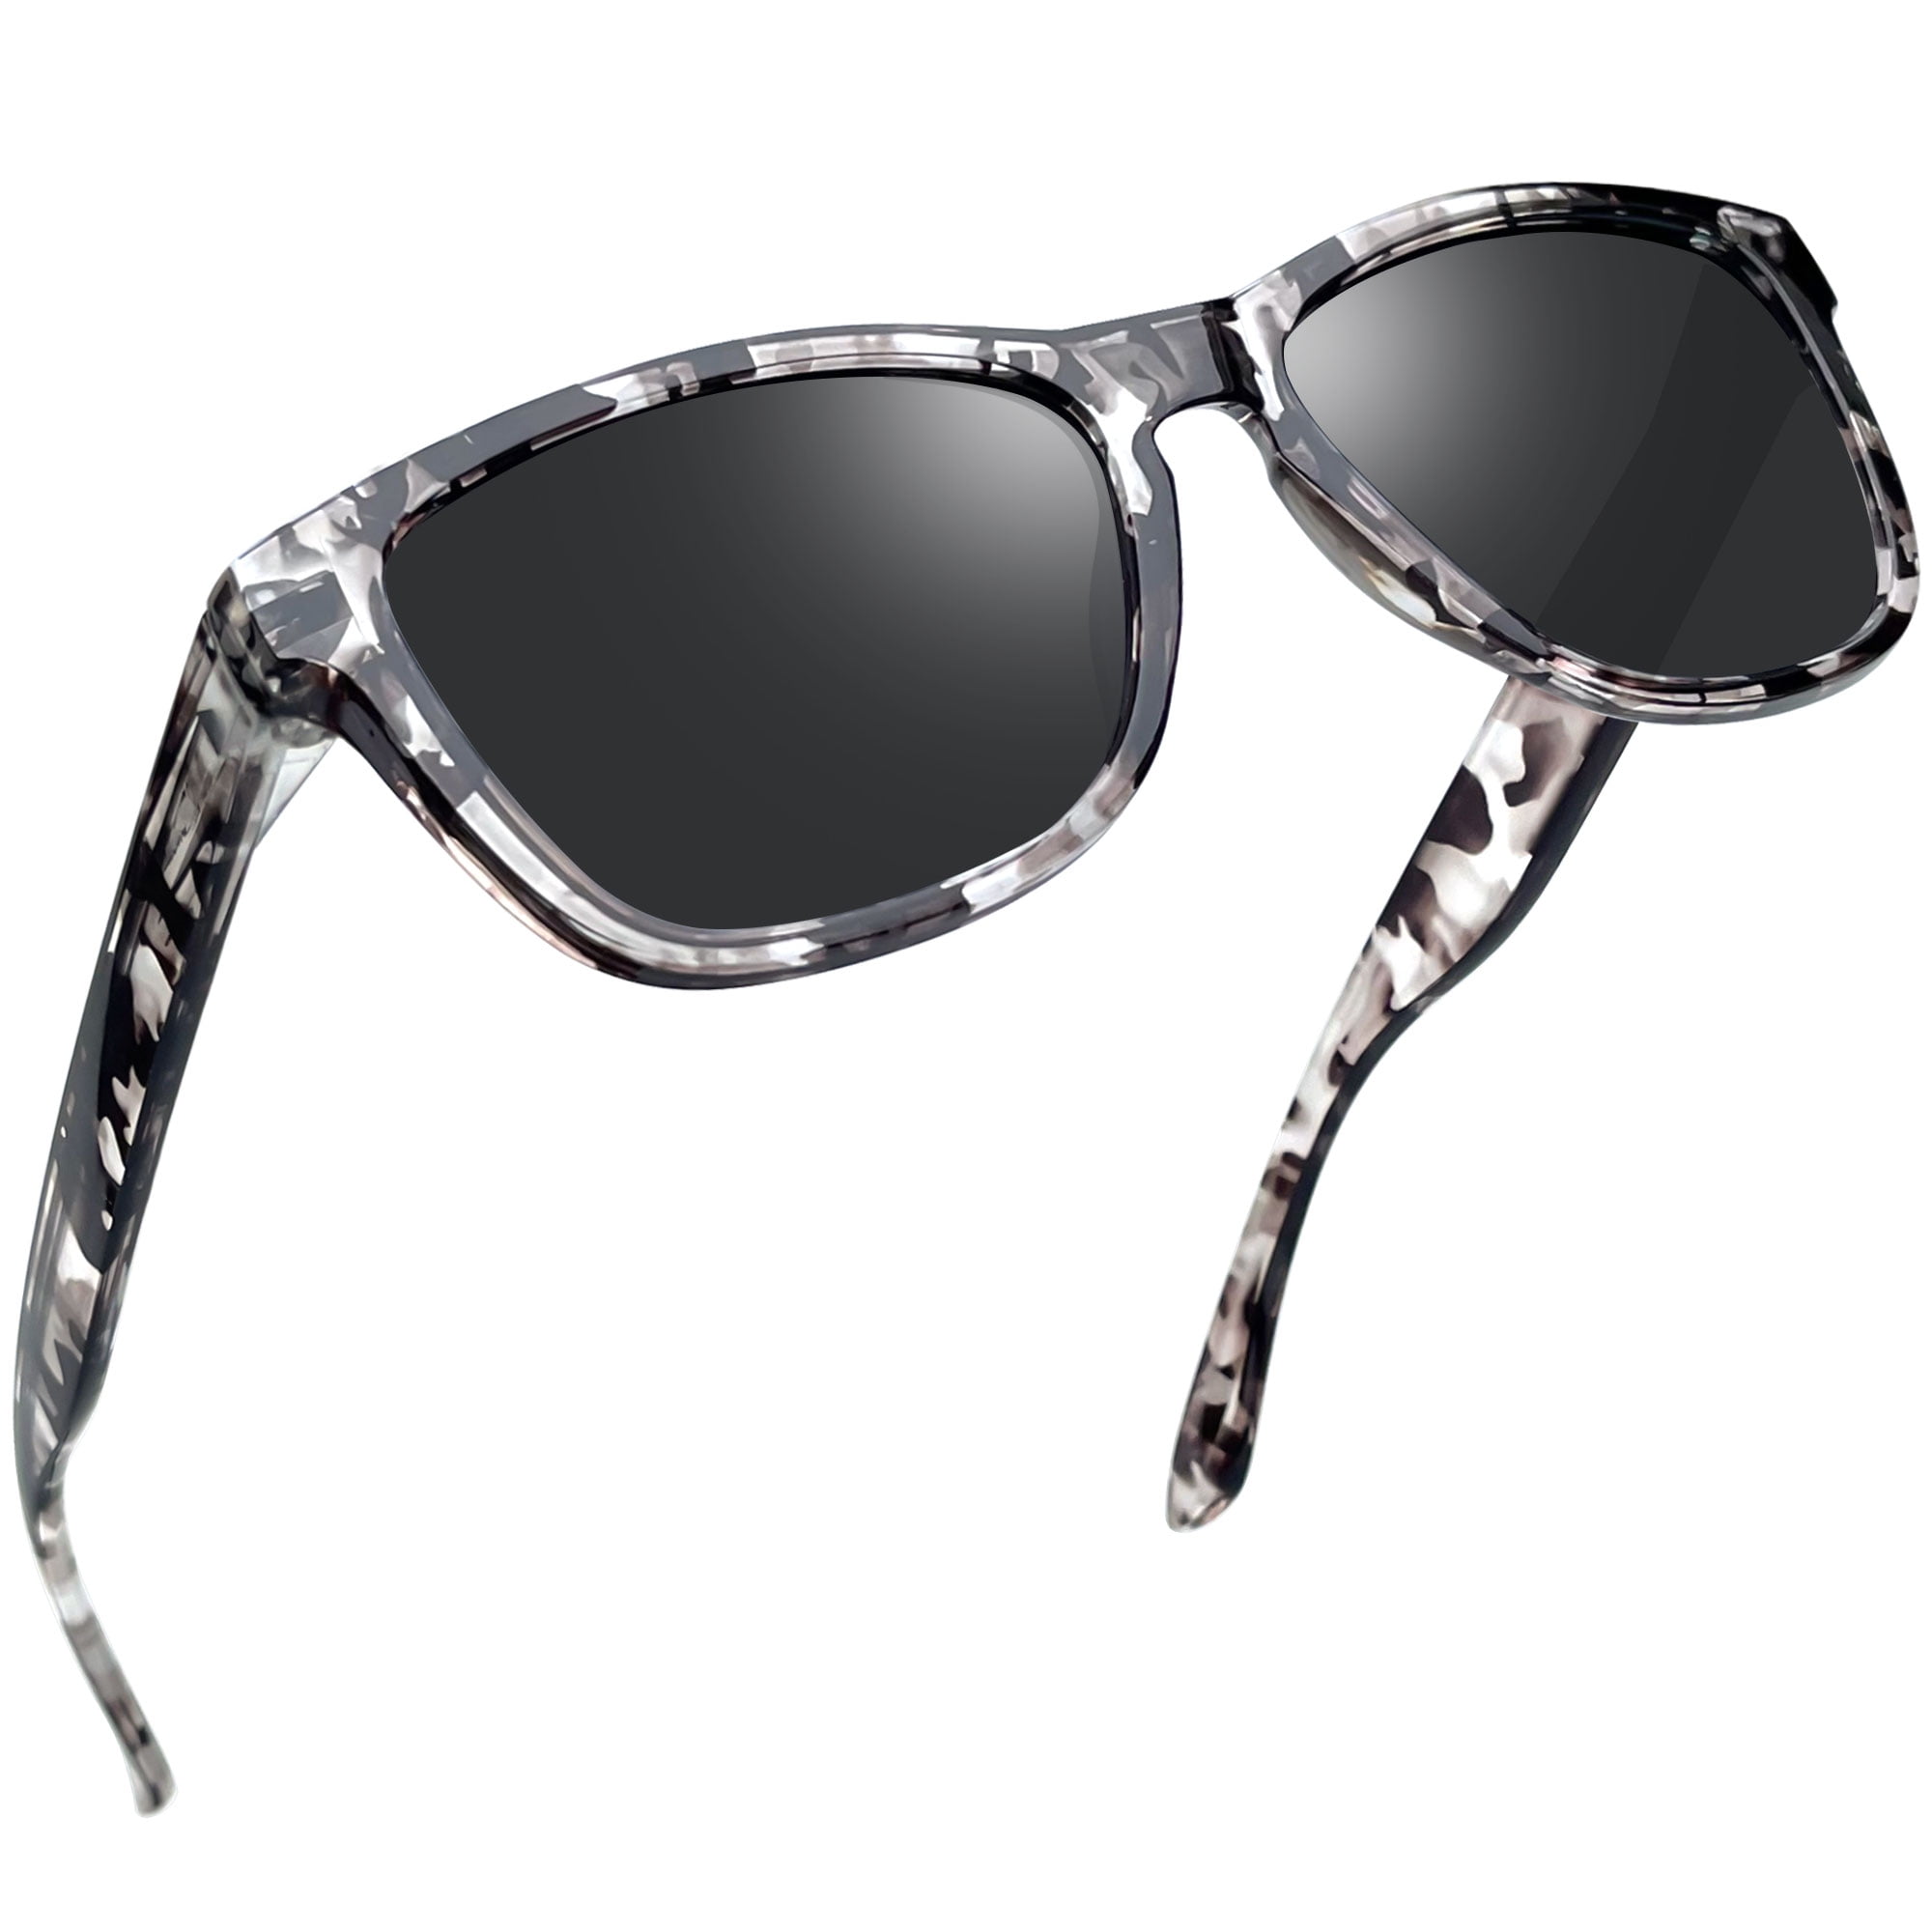 Classic Womens UV400 glasses Women Protection Joopin Retro Square Men, Mirrored Trendy Polarized Sunglasses for Sun